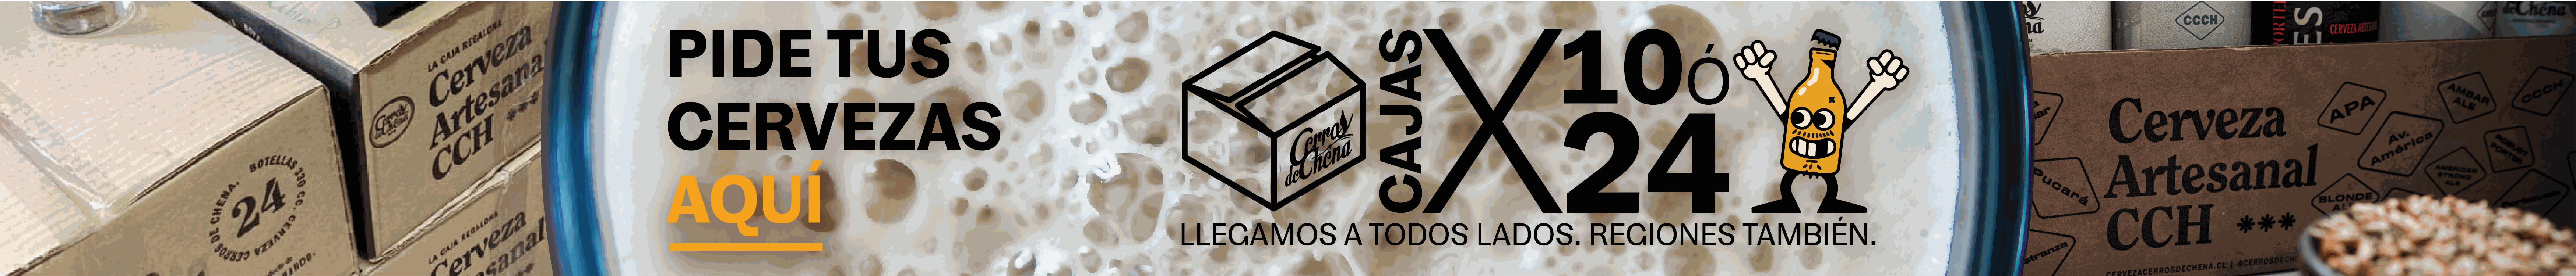 Clarico-Full Image